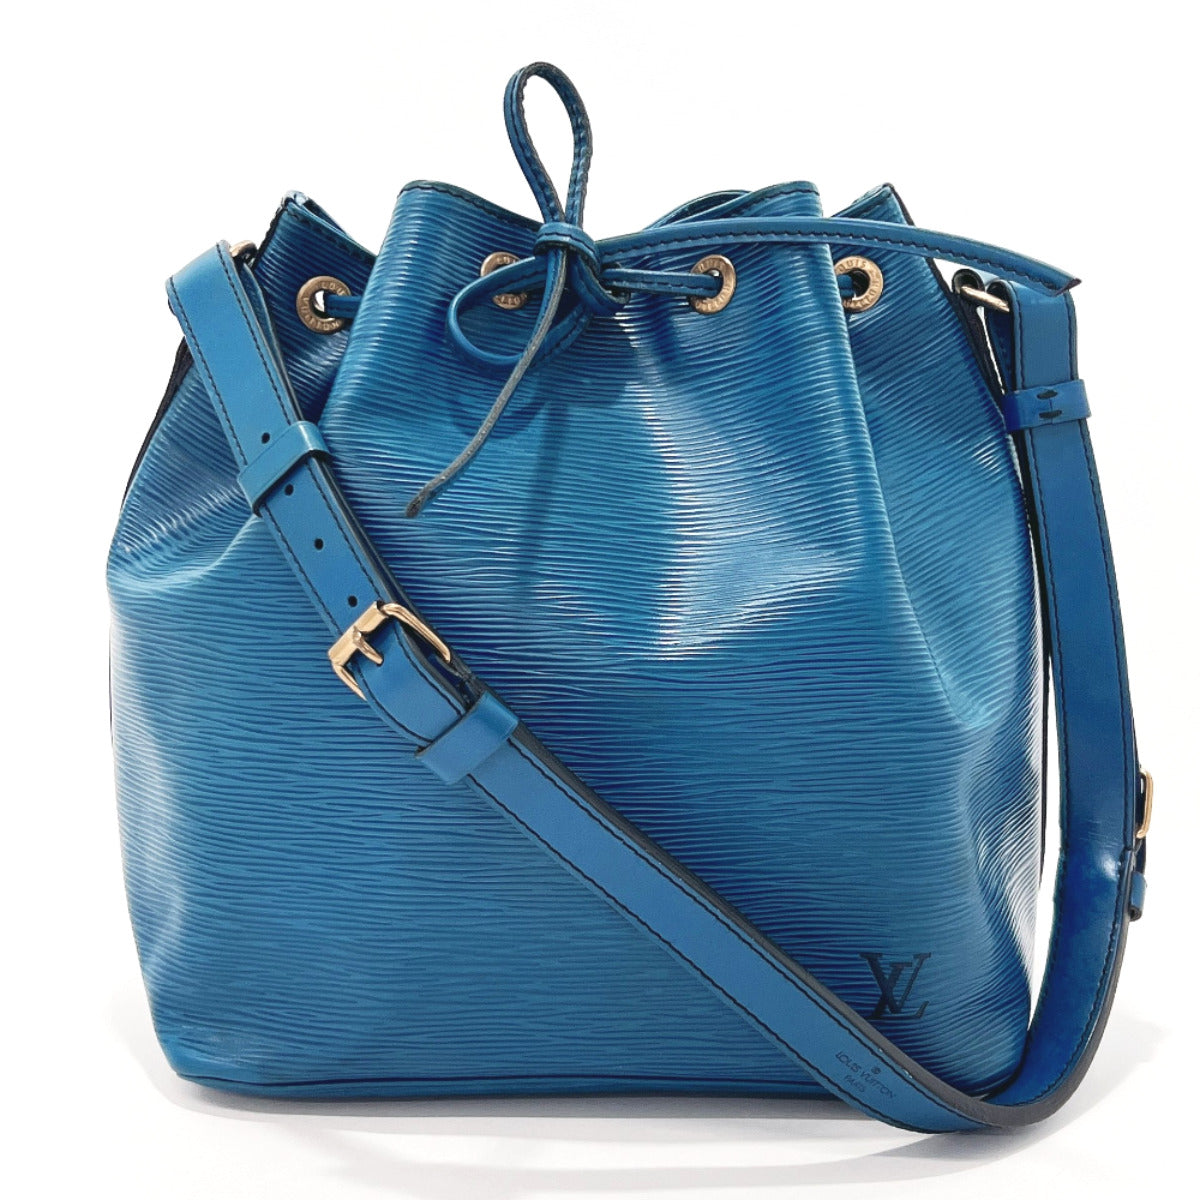 Louis Vuitton Epi Leather Bag Strap - Blue Bag Accessories